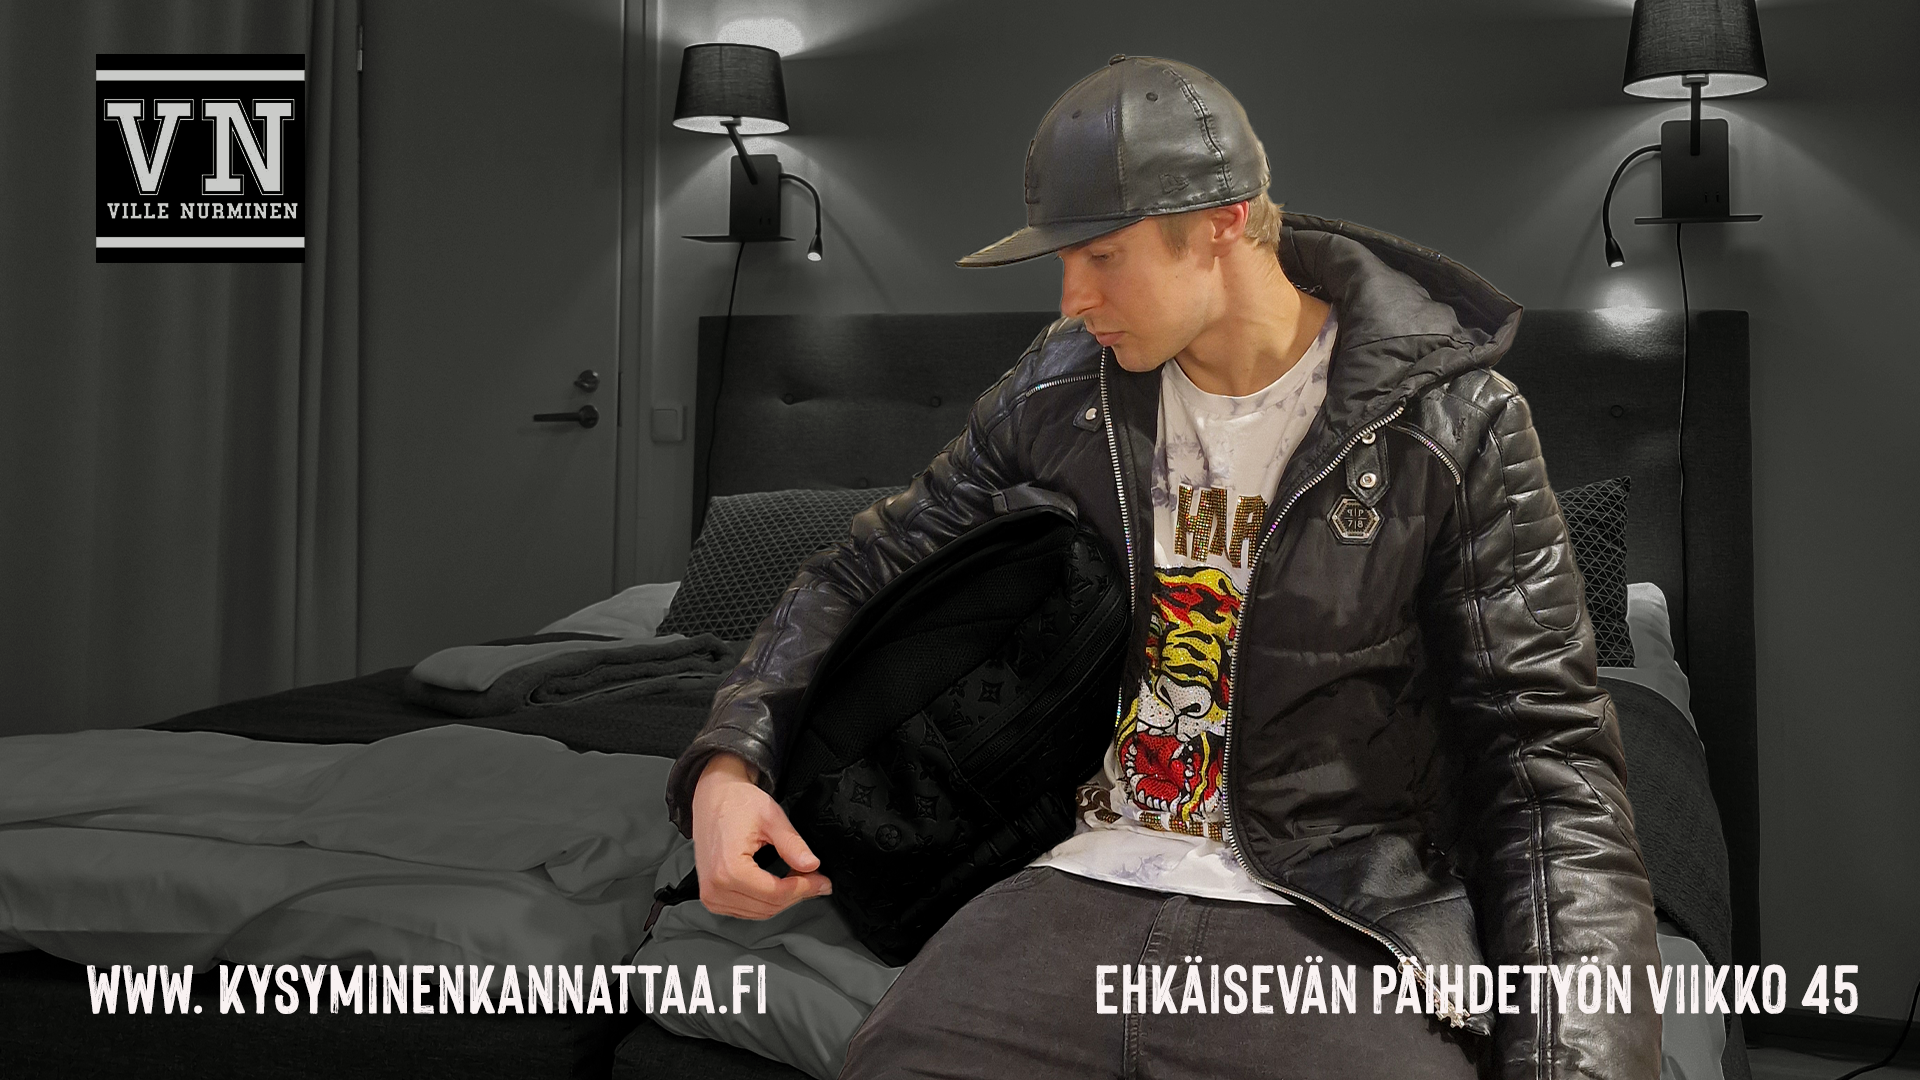 Ville Nurminen istuu hotellin sängyllä ulkovaatteet päällä, valmiina lähtemään. Tekstit: www.kysyminenkannattaa.fi Ehkäisevän päihdetyön viikko 45 ja Ville Nurmisen logo